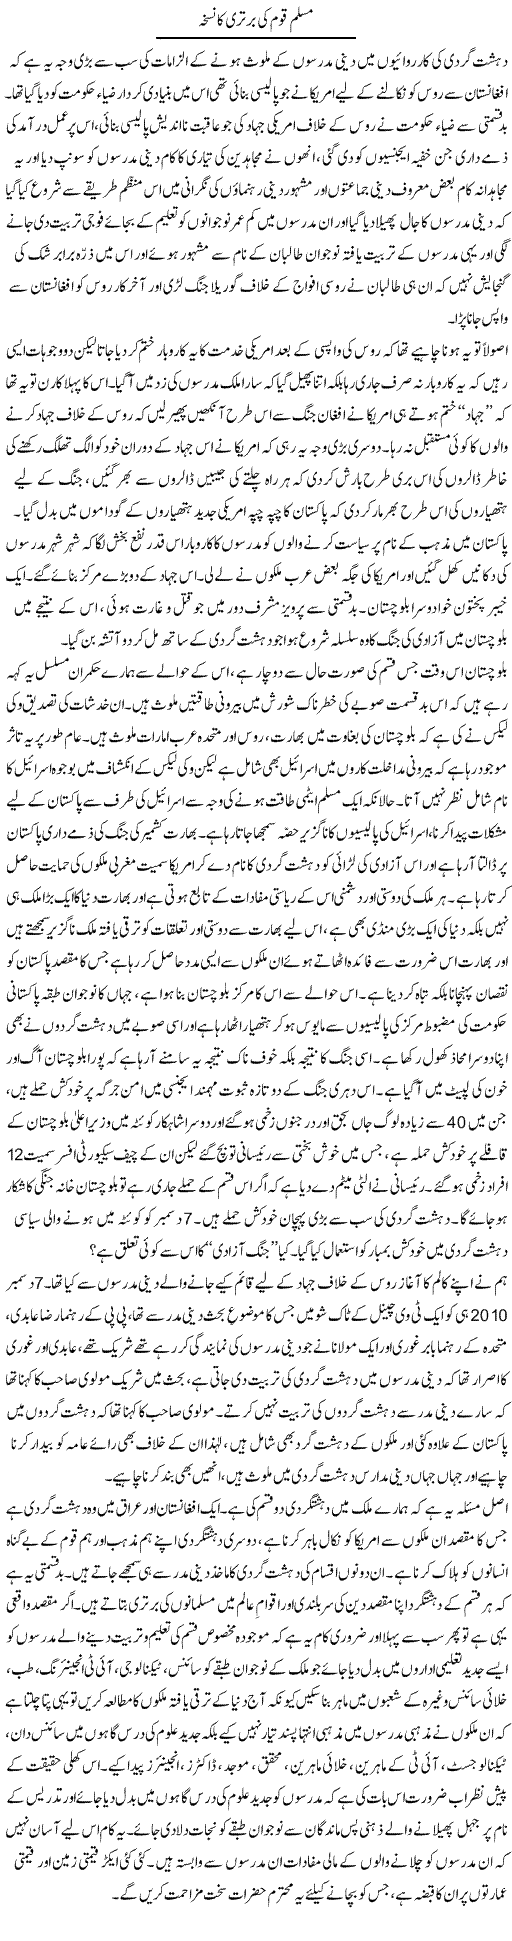 Muslim Nation Express Column Zaheer Akhtar 20 December 2010